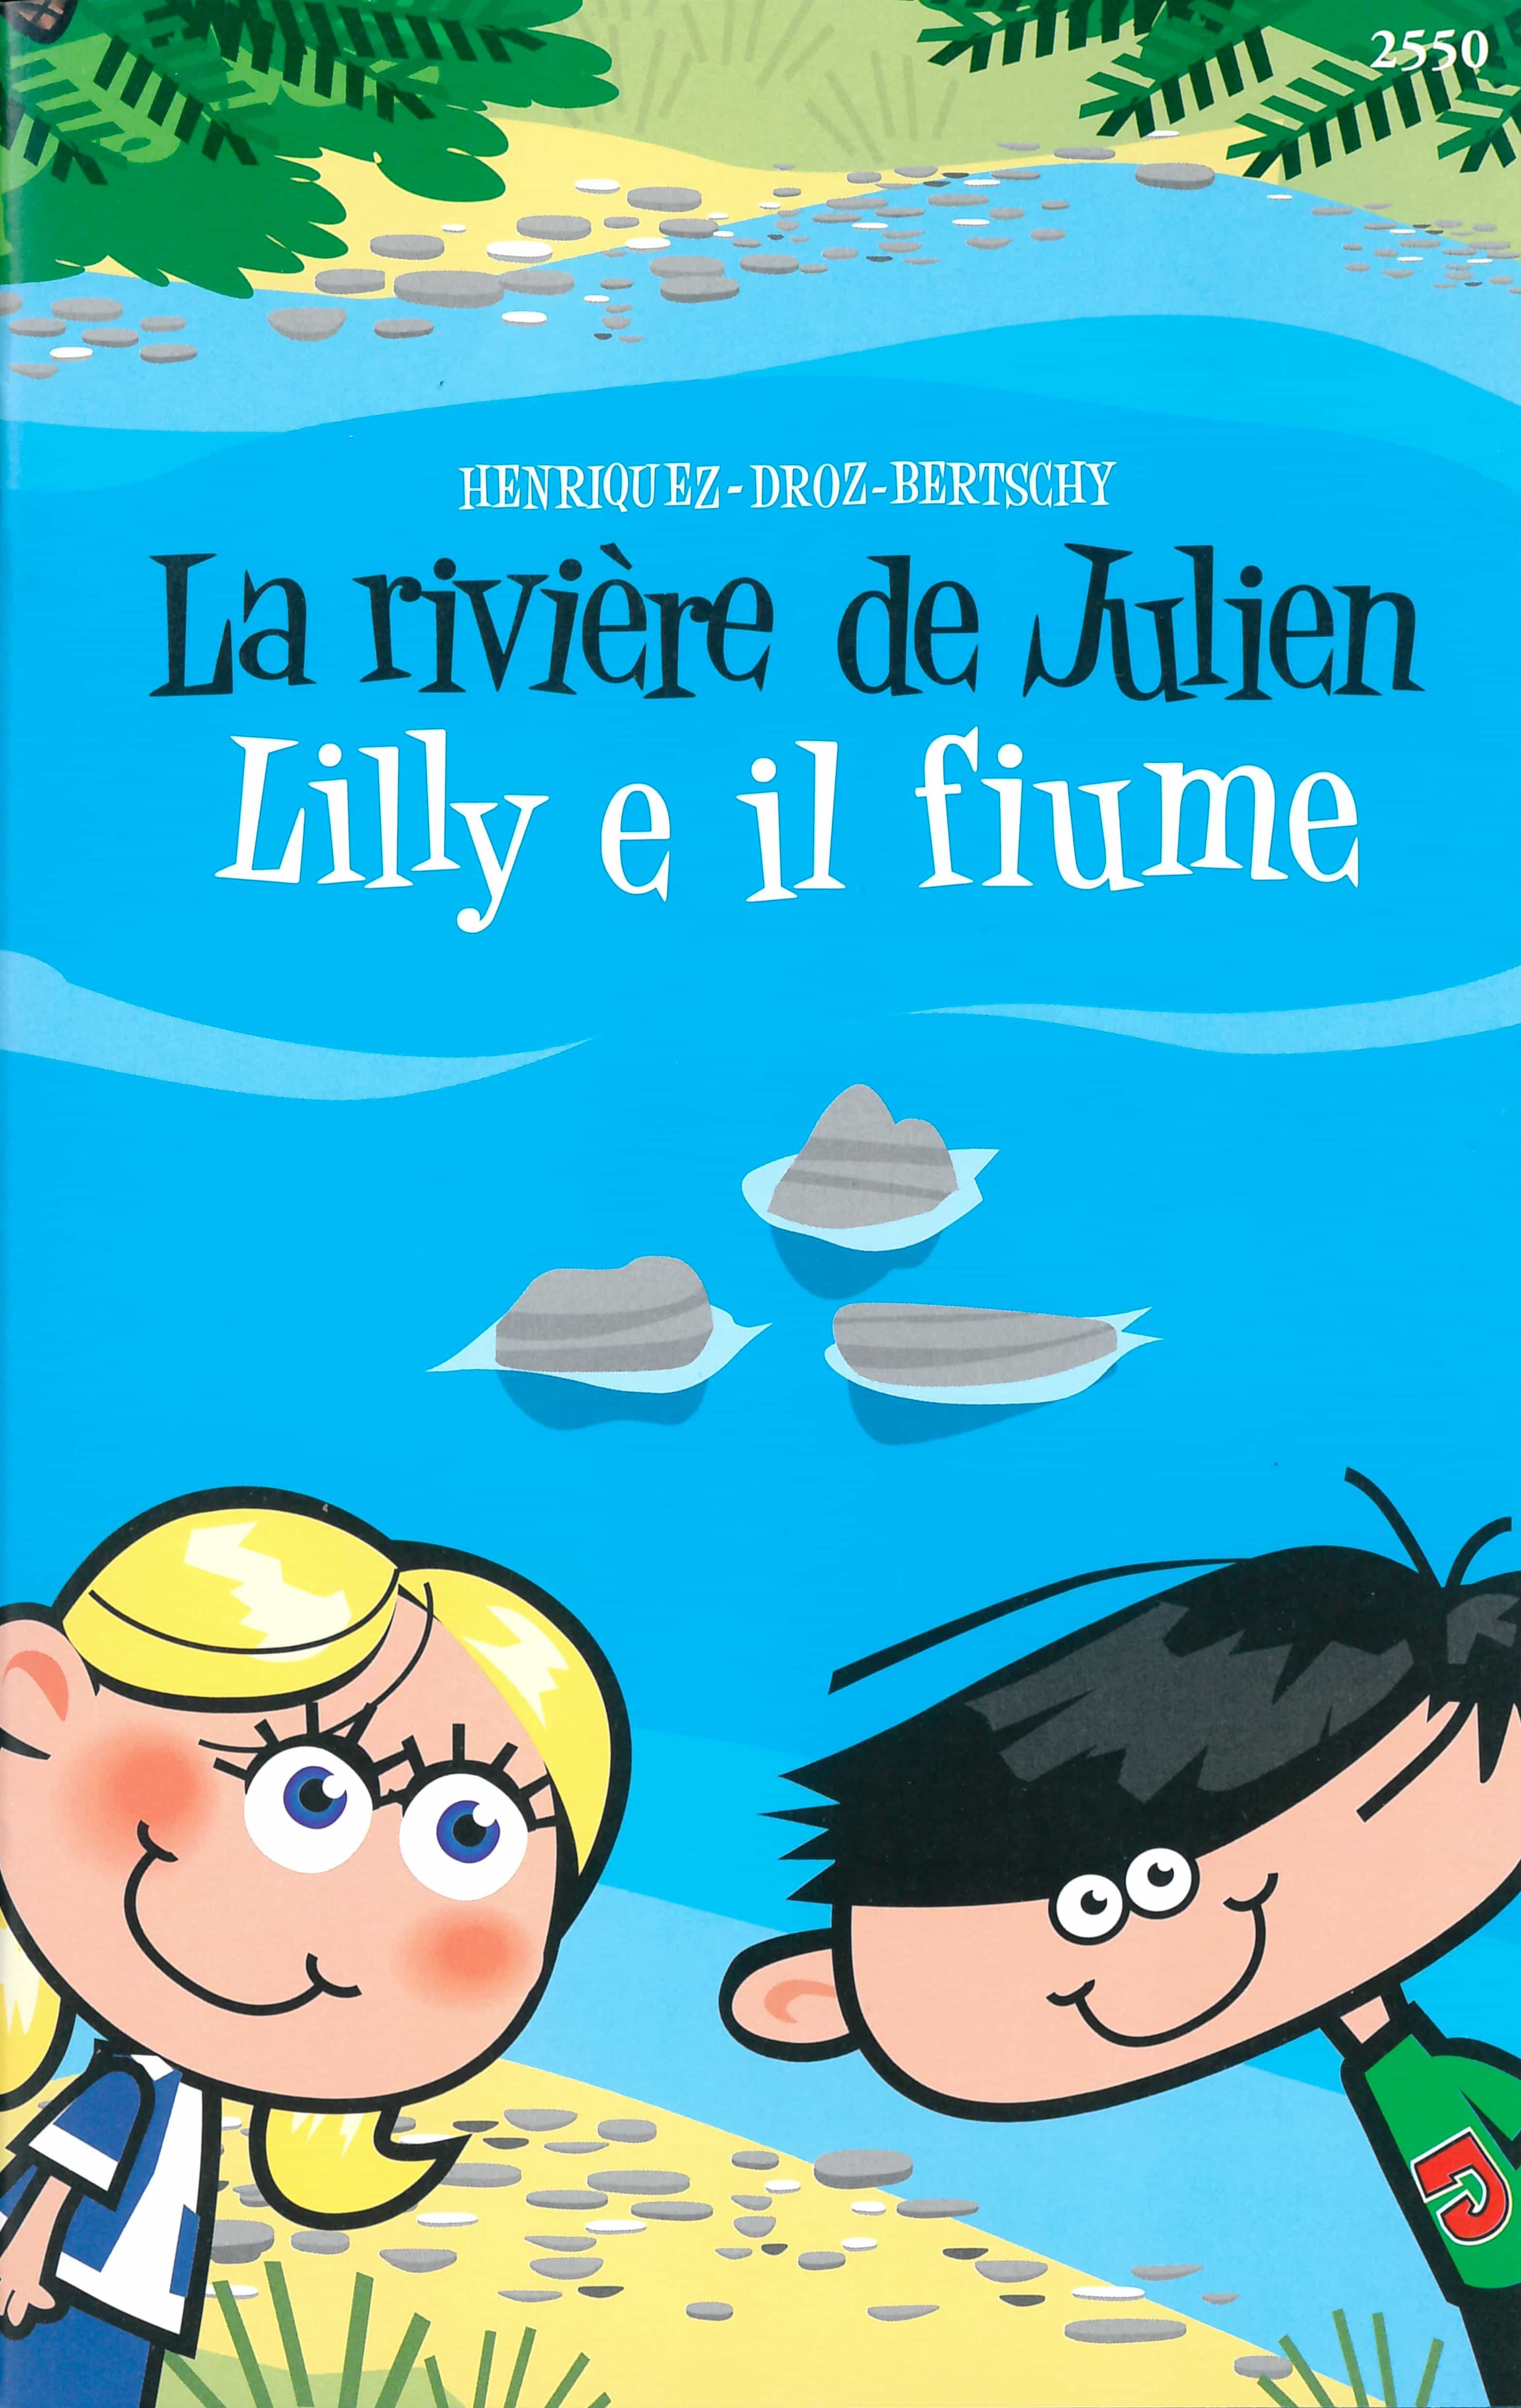 La rivière de Julien. Lilly e il fiume, livre pour enfants de Carlos Henriquez/Nadia Droz, illustr. Christophe Bertschy, OSL